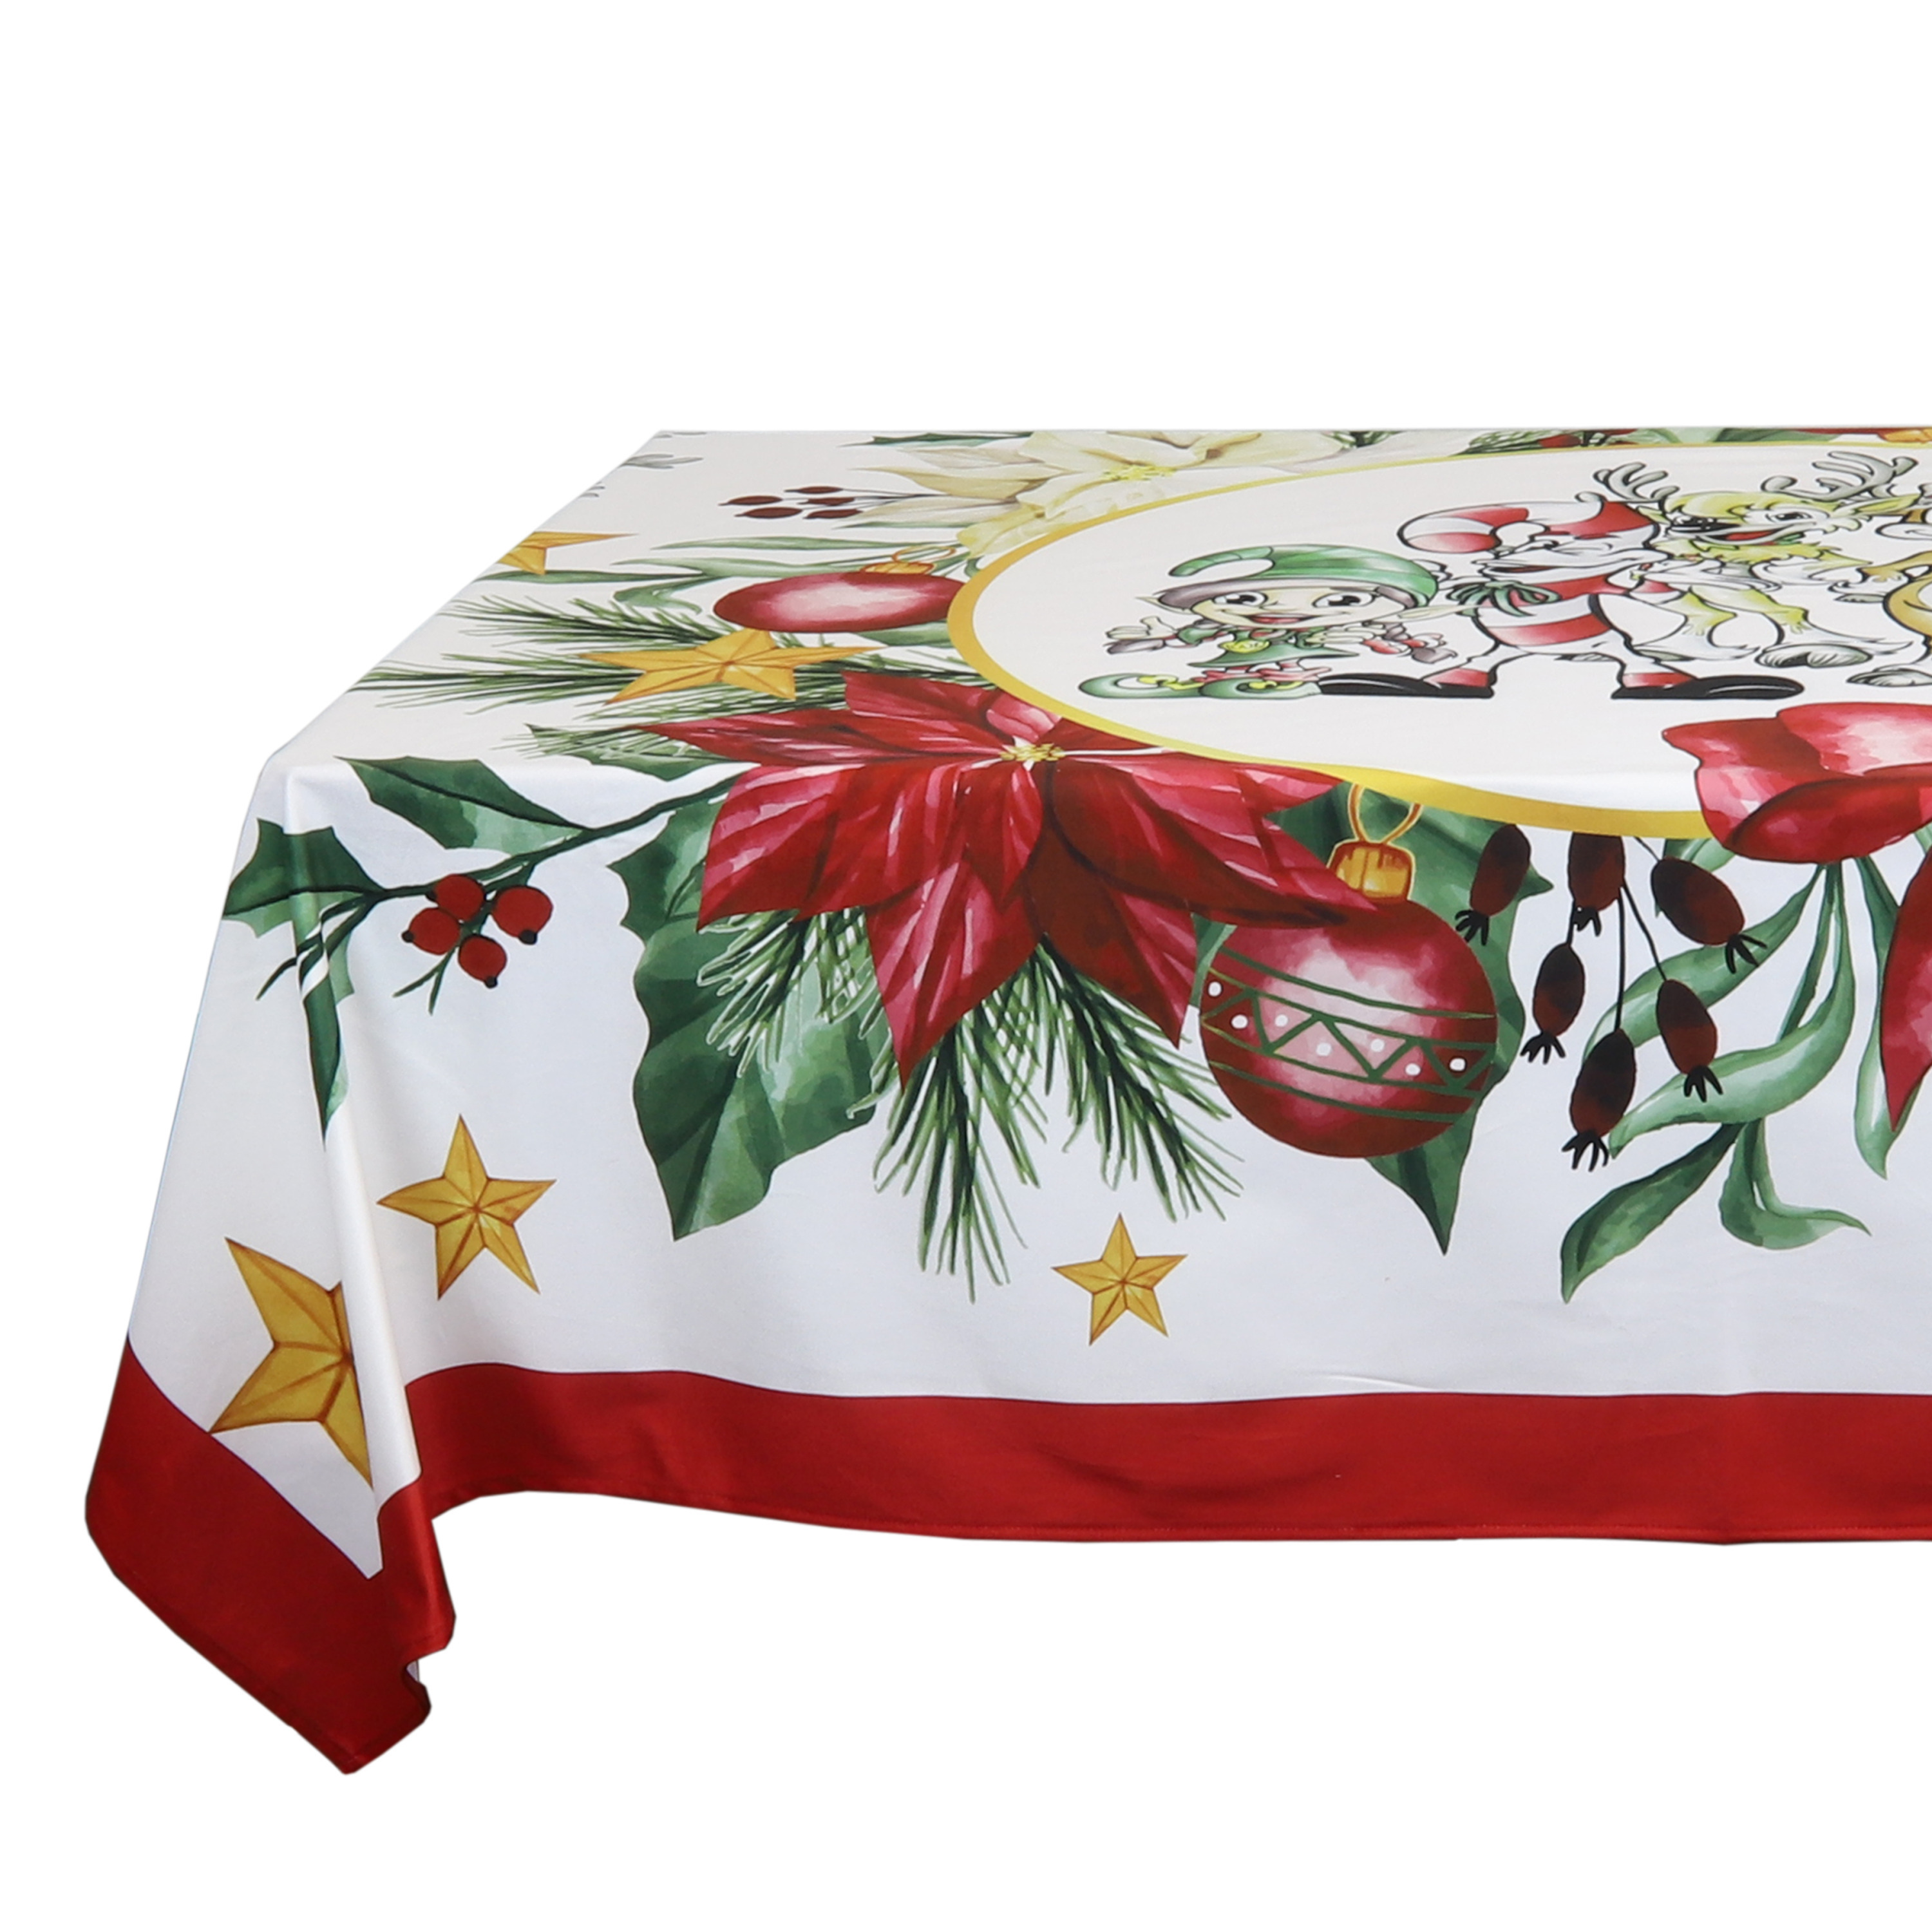 Kerst tafelkleed/tafellaken rood met kerstprint 150 x 200 cm